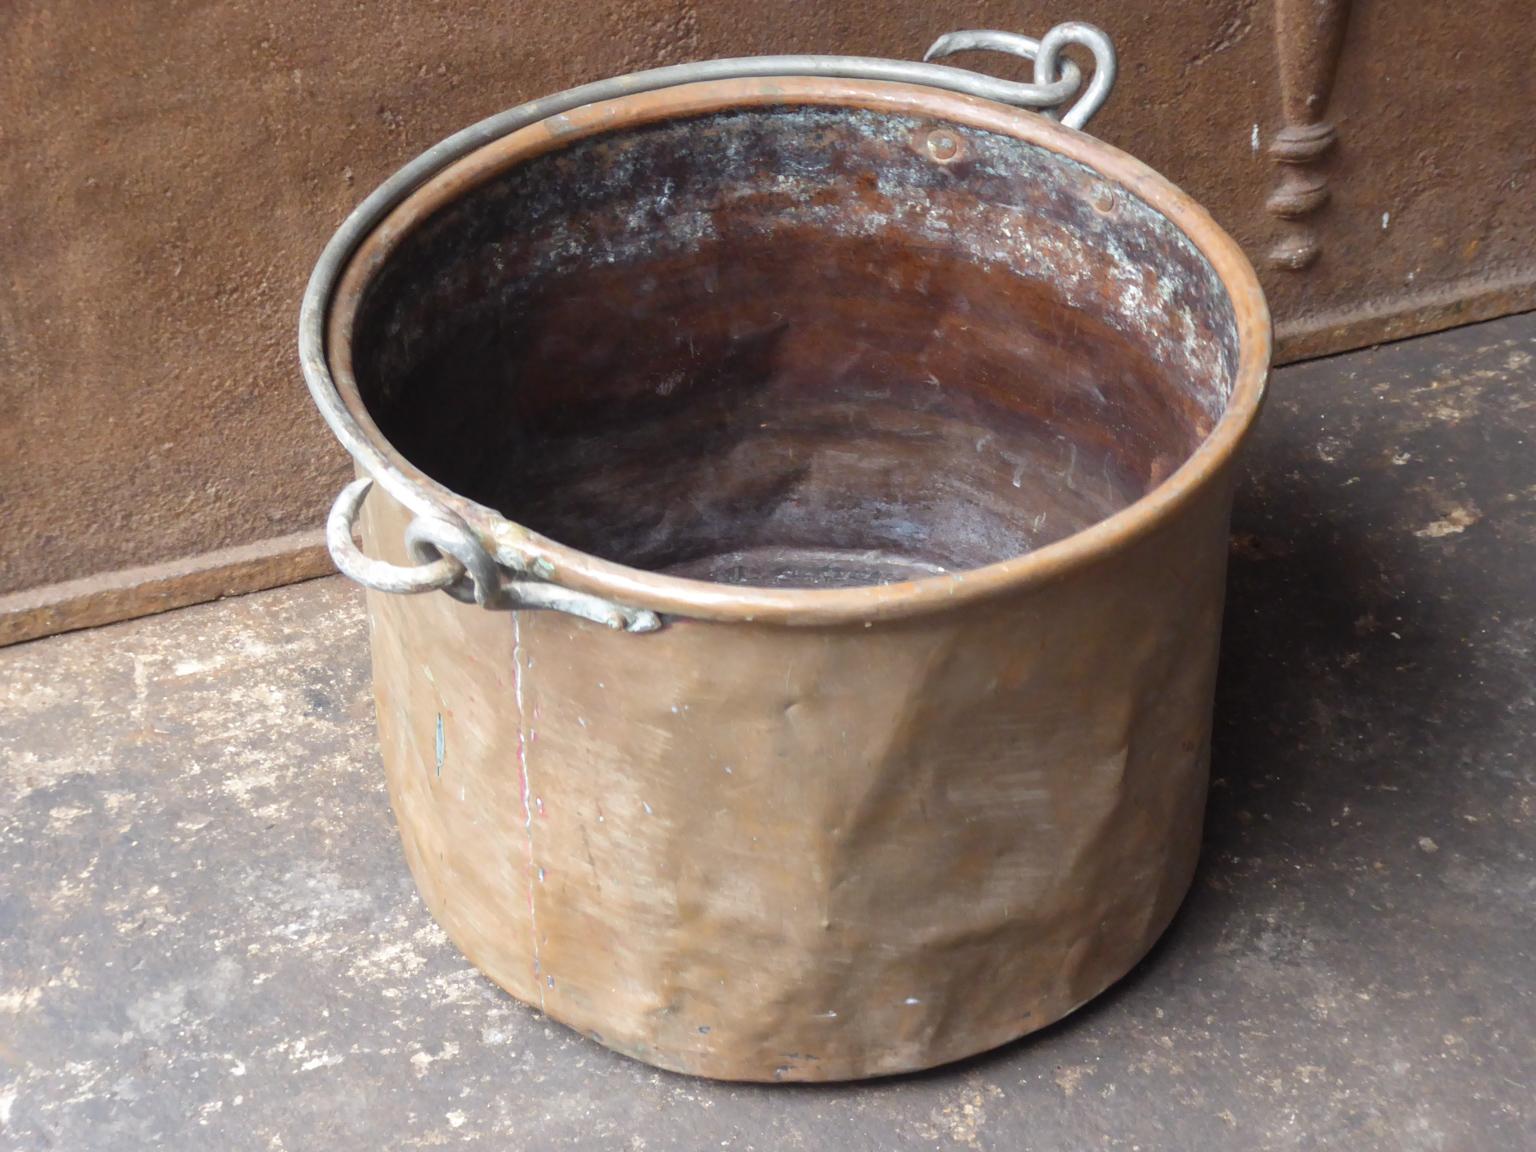 Panier à bûches hollandais du 18e siècle. Le panier à bois de chauffage est fabriqué en cuivre et possède une poignée en fer forgé. Le porte-bûches est en bon état et fonctionne parfaitement. La largeur totale du panier, poignées comprises, est de